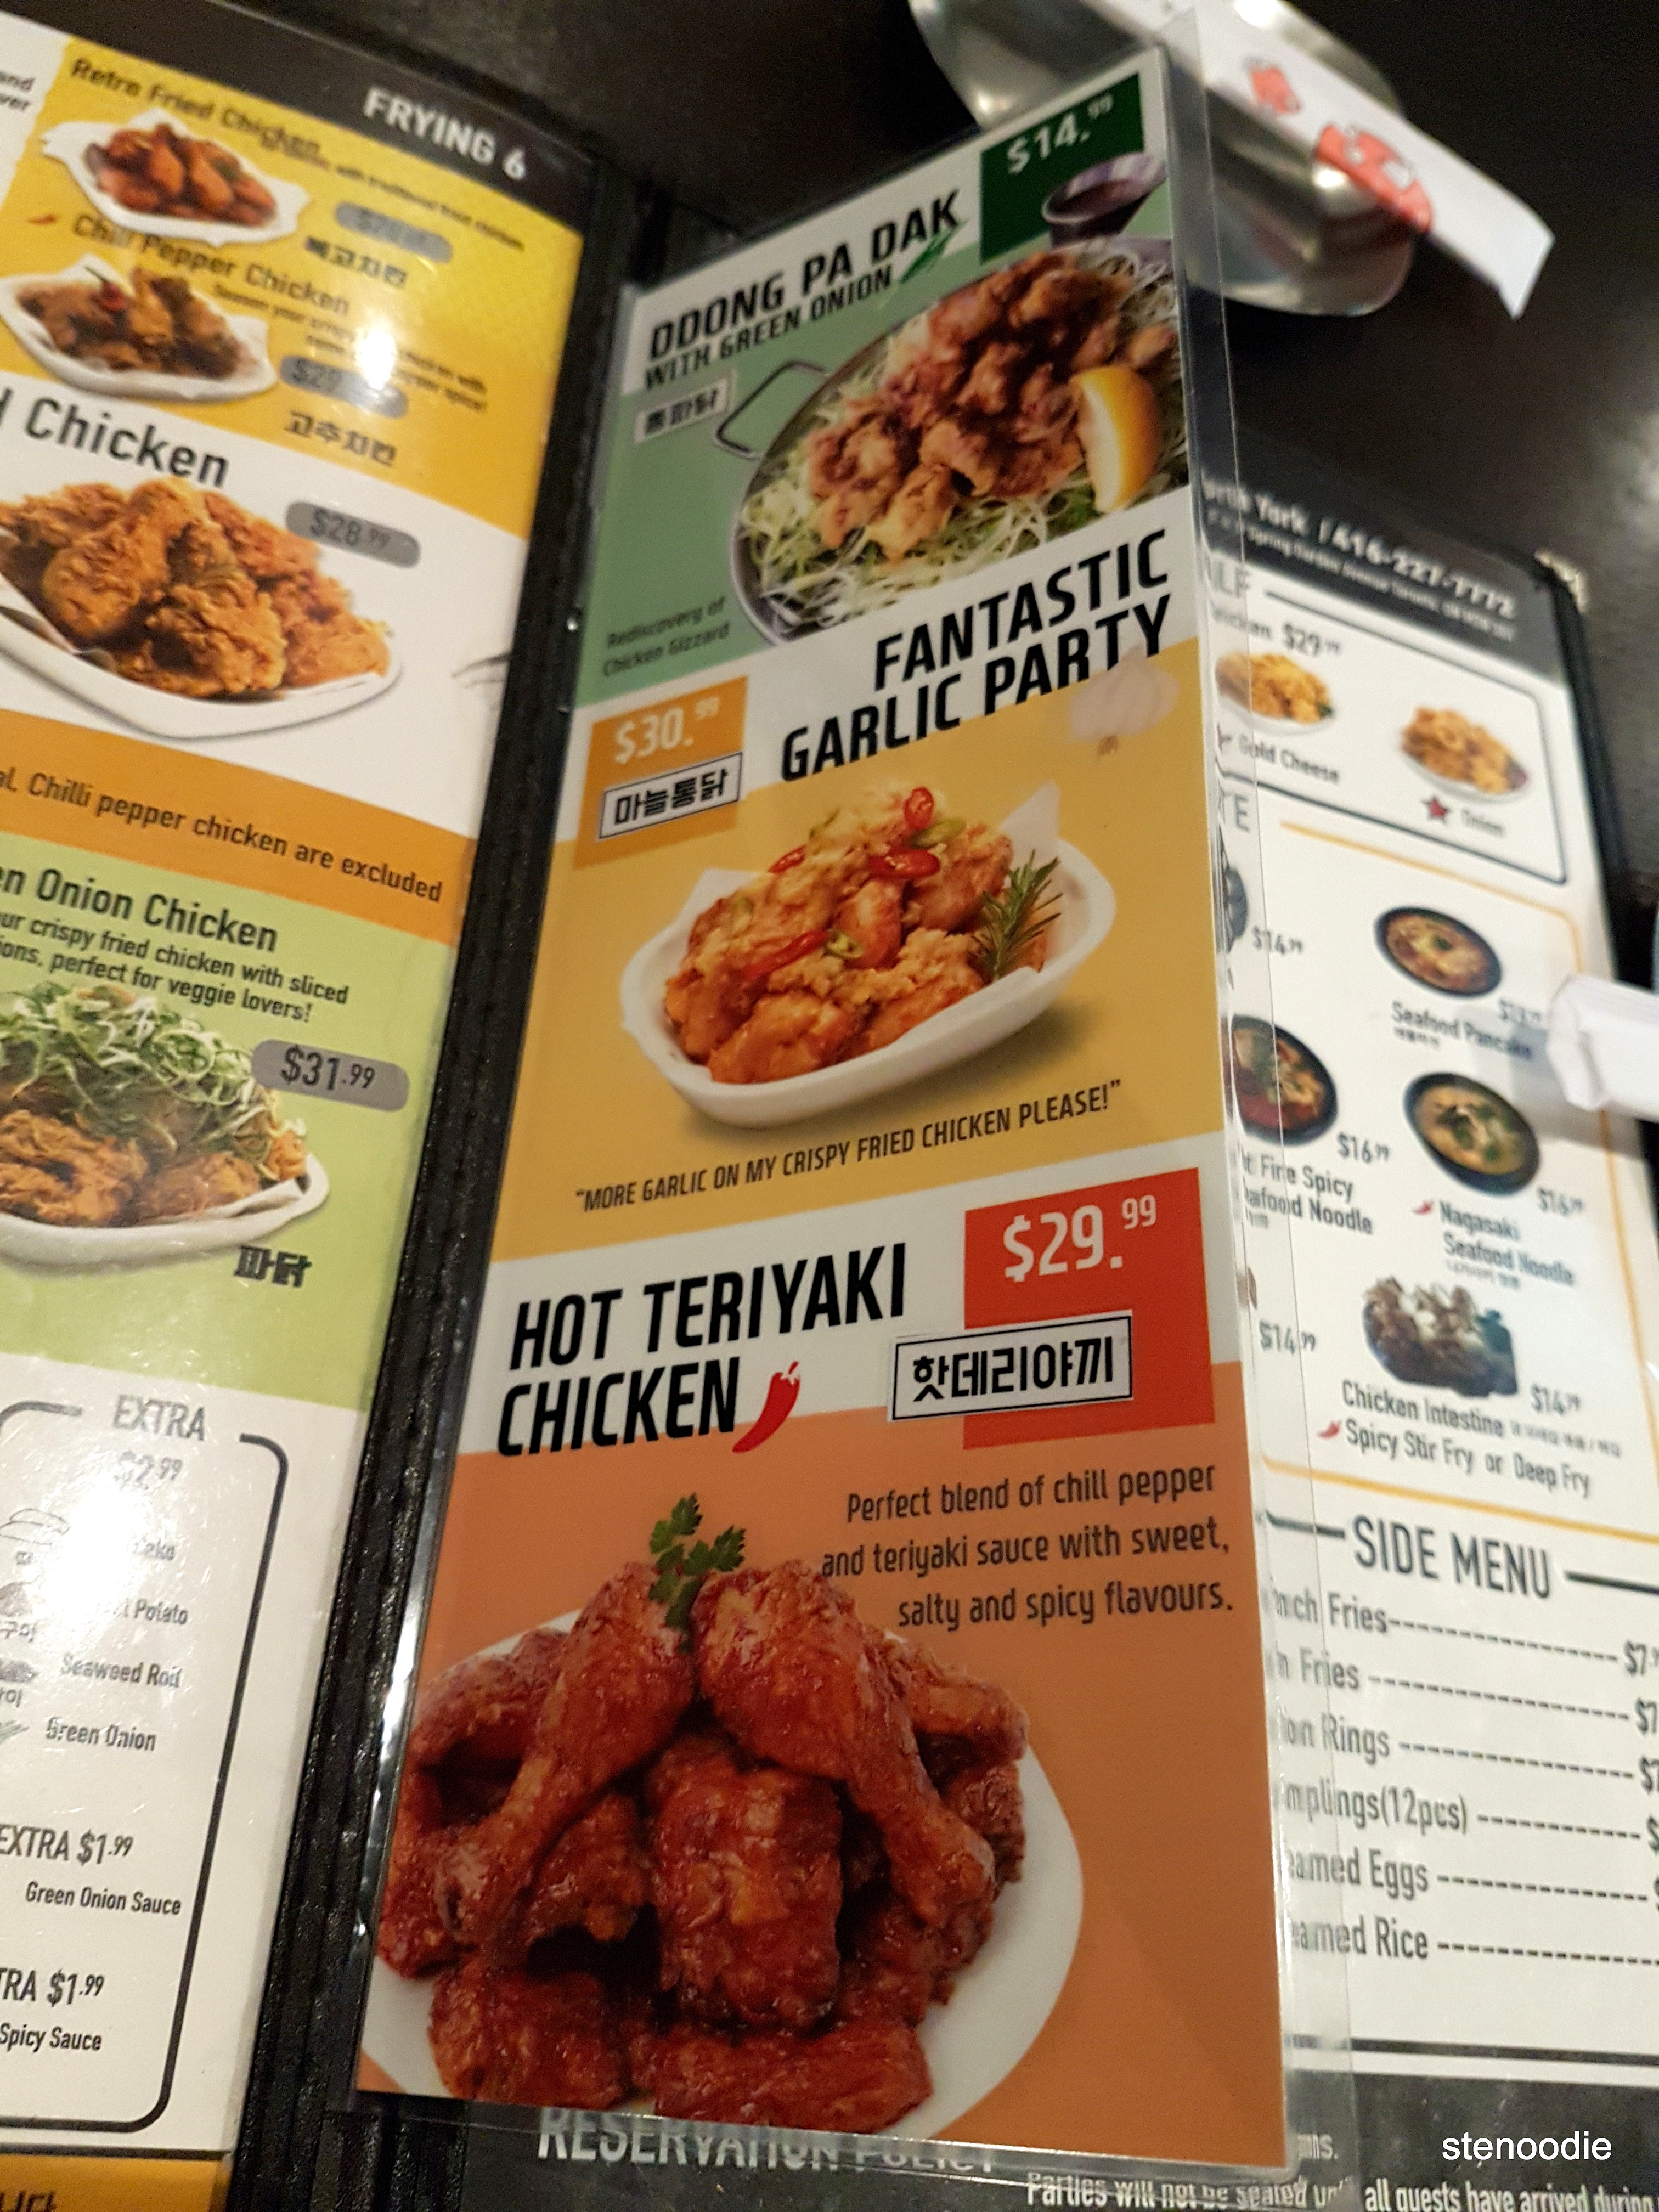 MyMy Chicken menu and prices